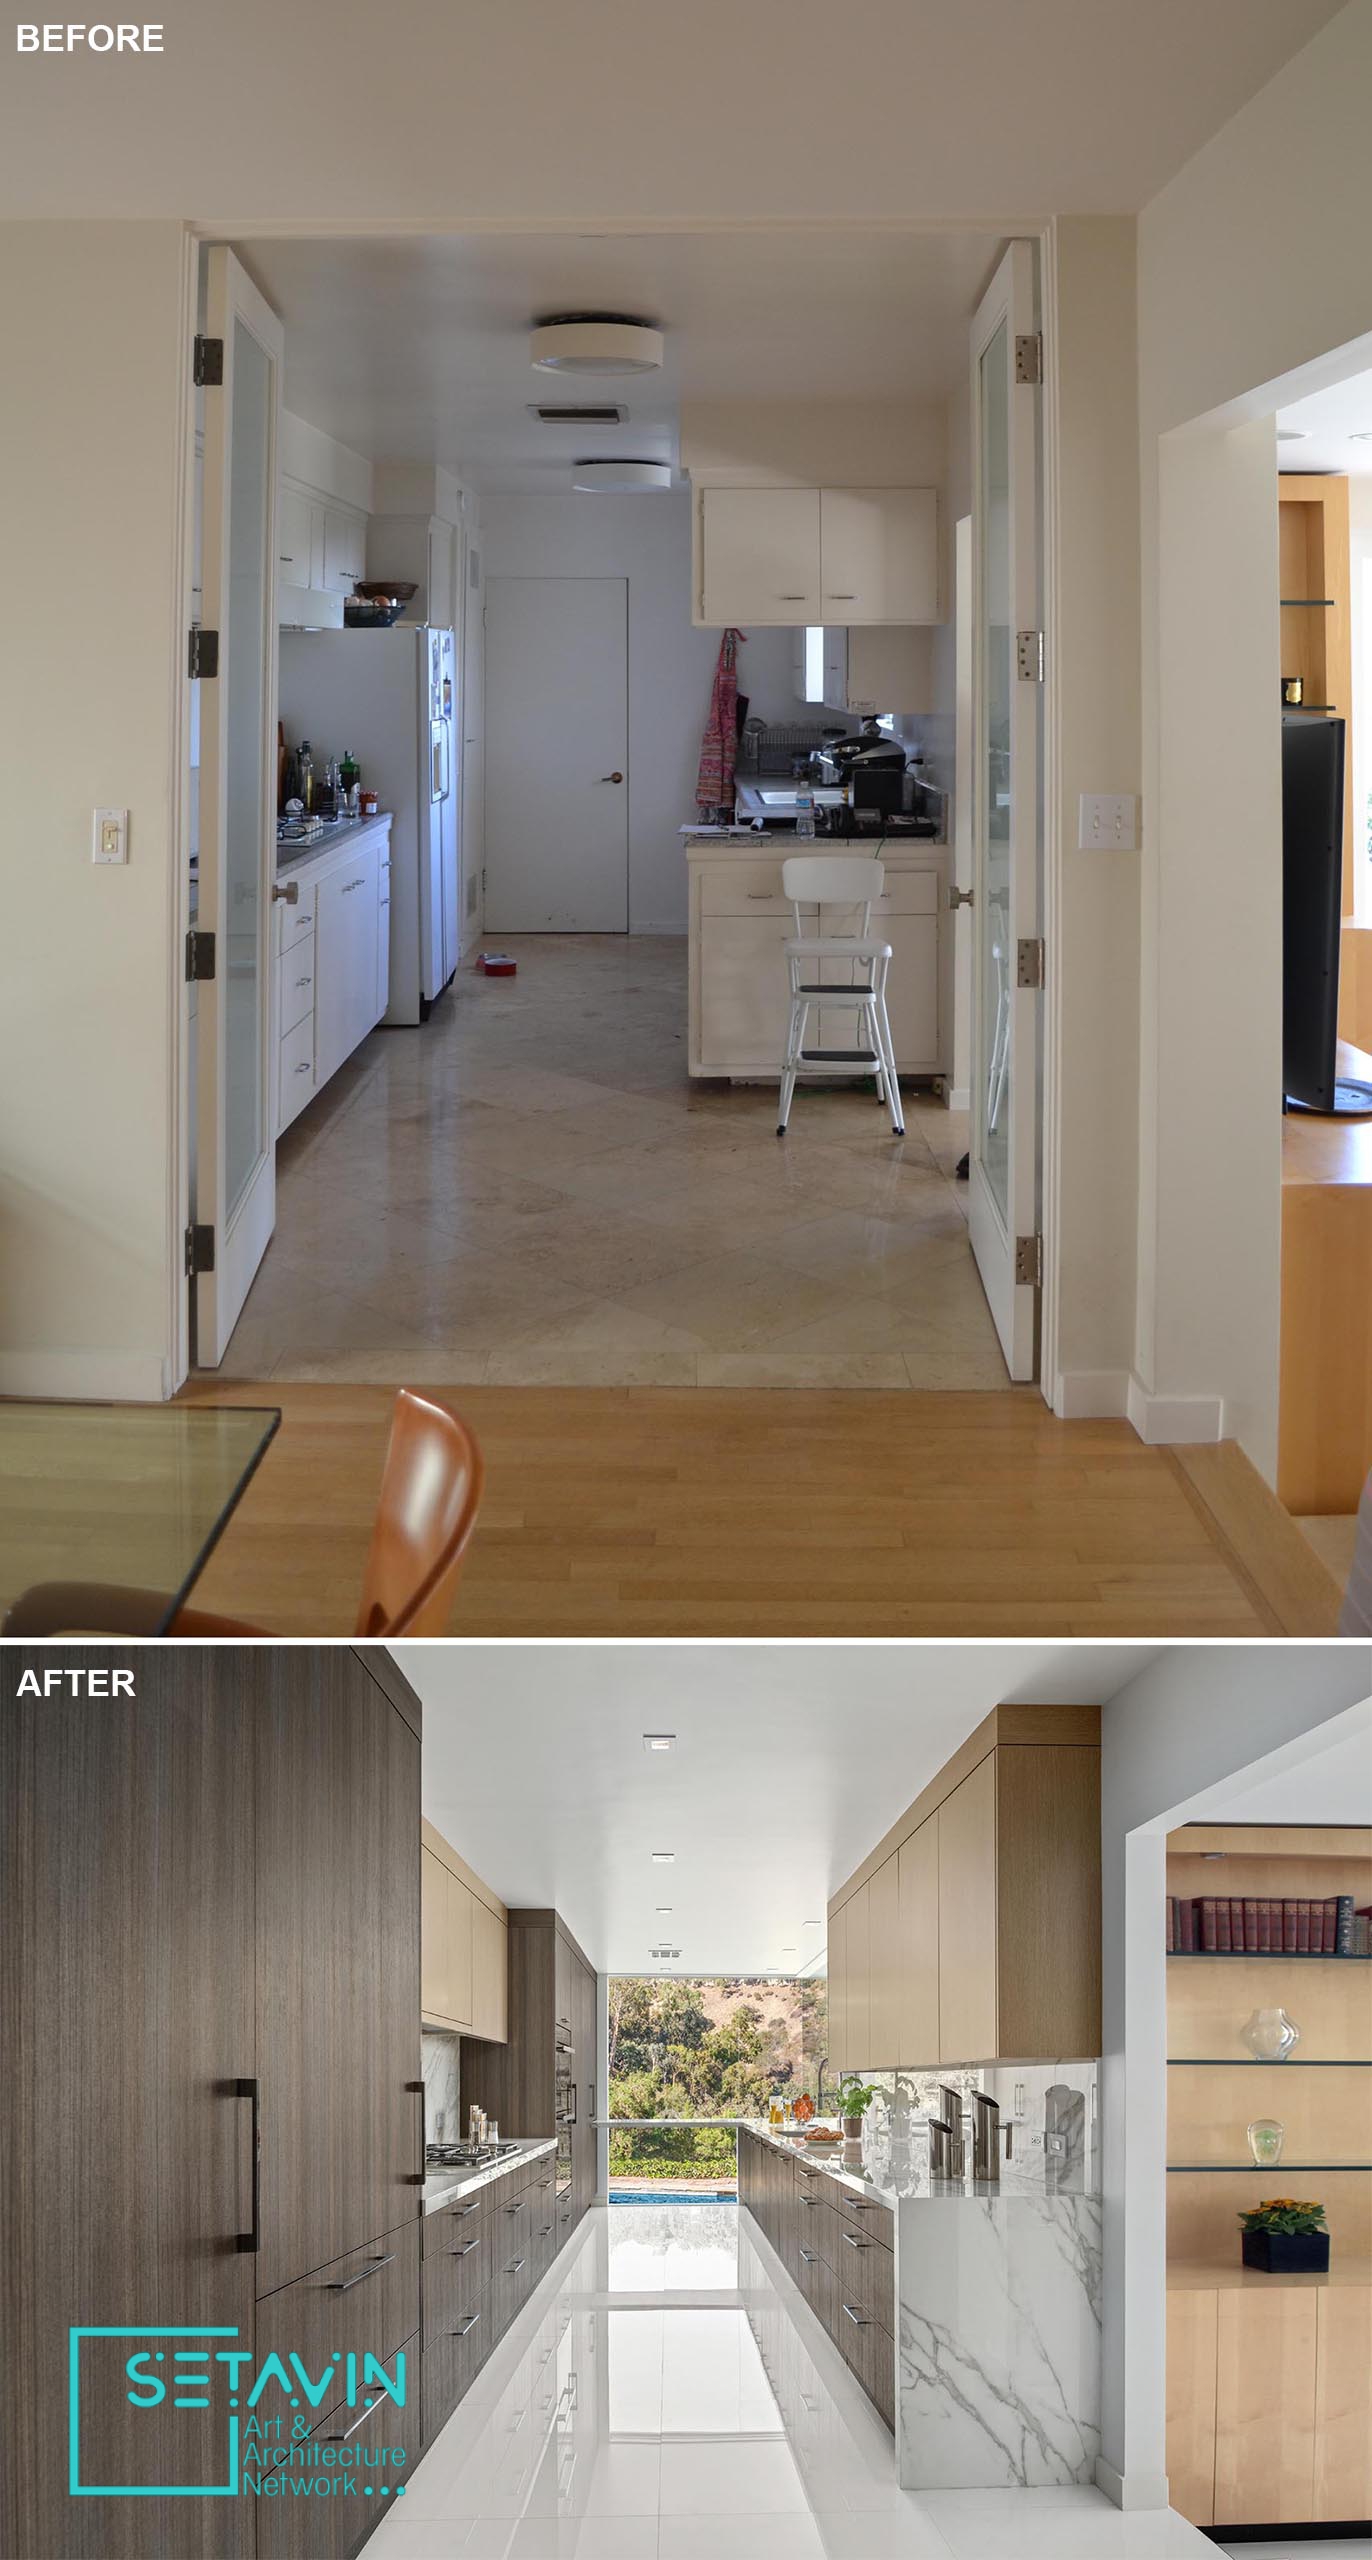 قبل و بعد طراحی آشپزخانه ای در کالیفرنیا